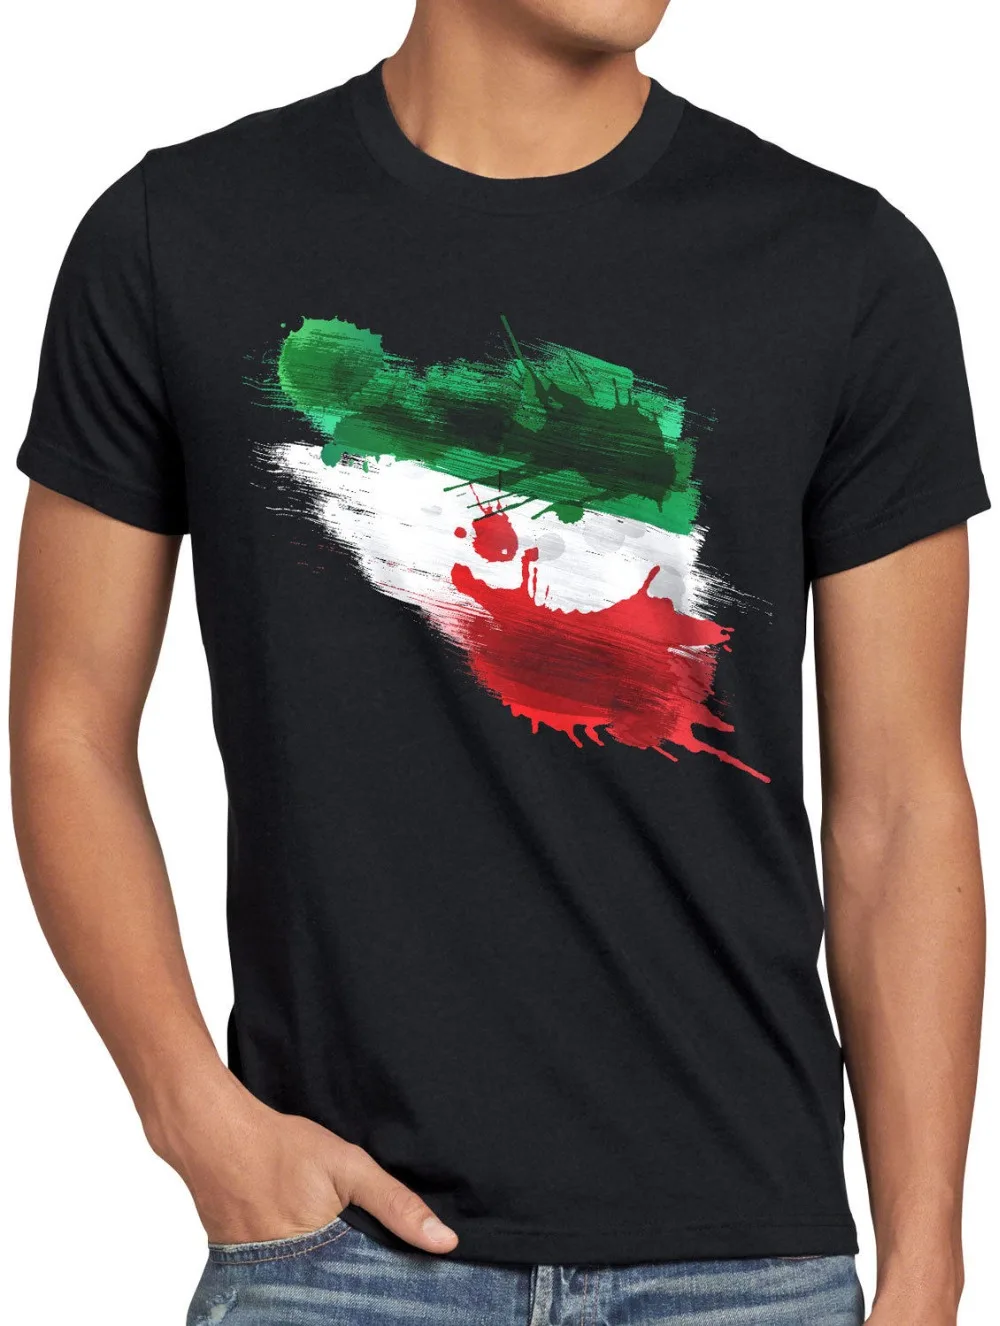 

Новое поступление 2019, Мужская модная футболка из Ирана, Спортивная футболка Herren Fuball Wm Em Fahne National-Flagge веер, печатная рубашка